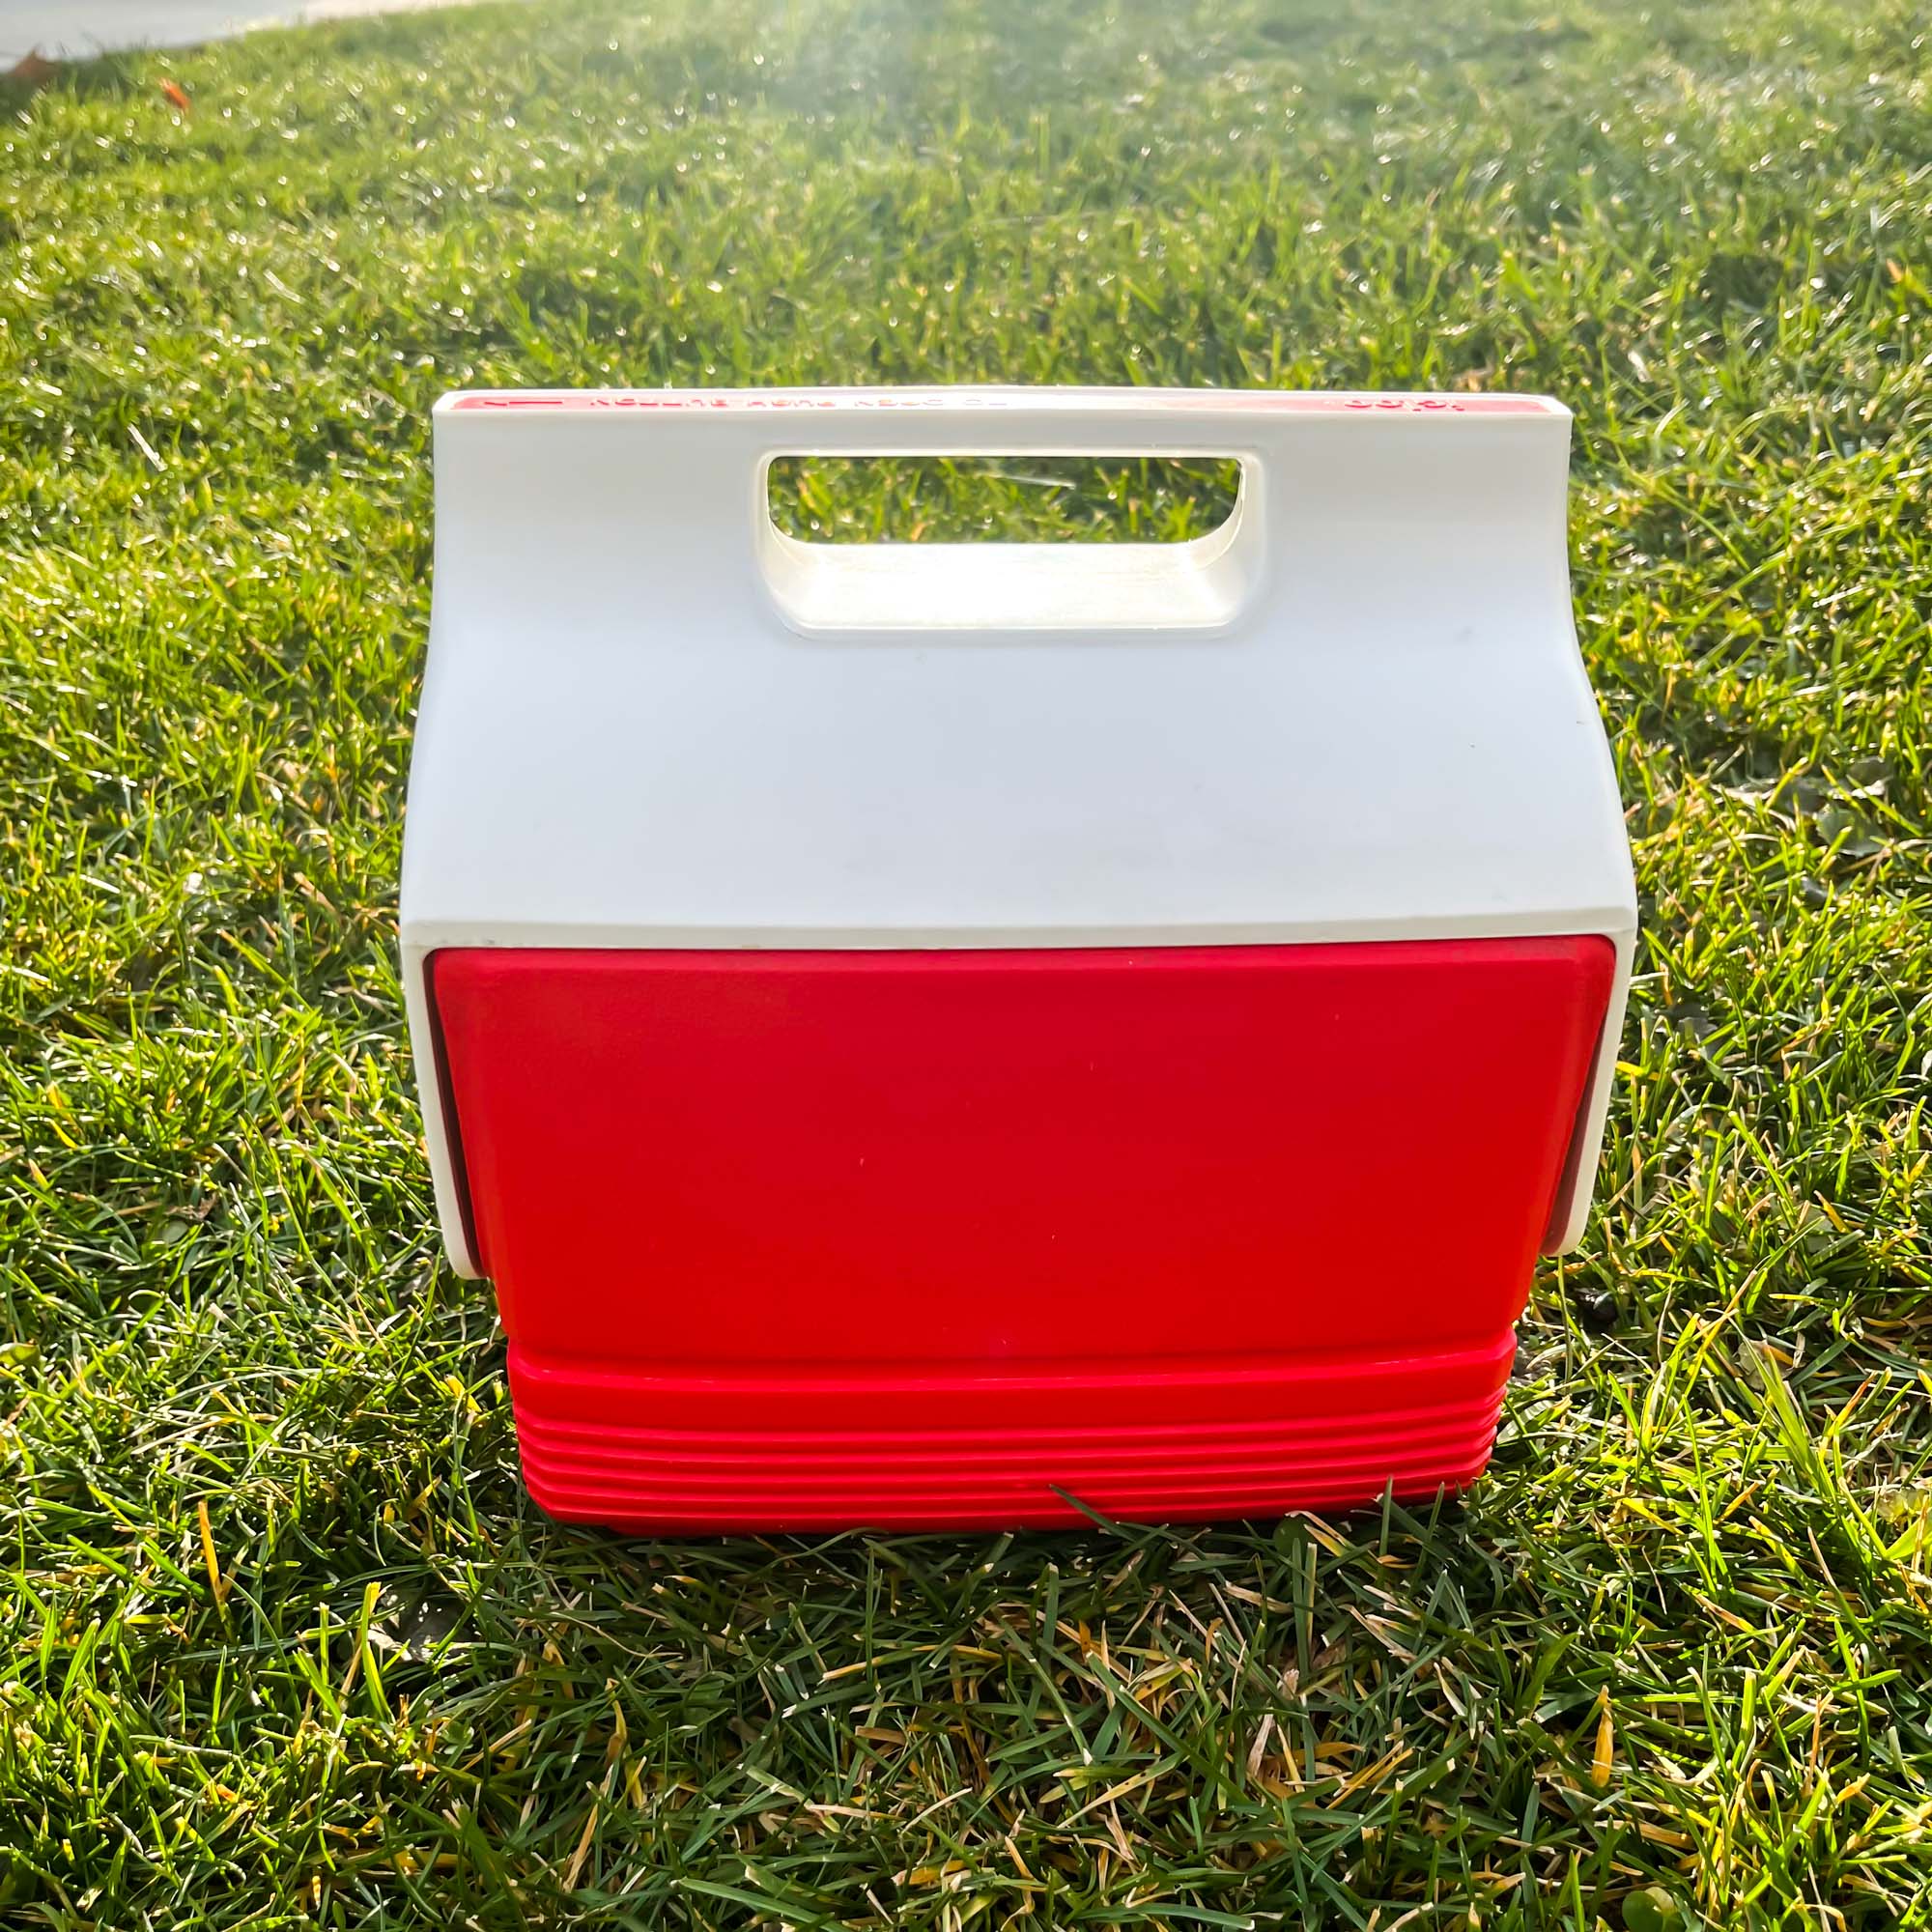 vintage red Igloo Mini Mate cooler 